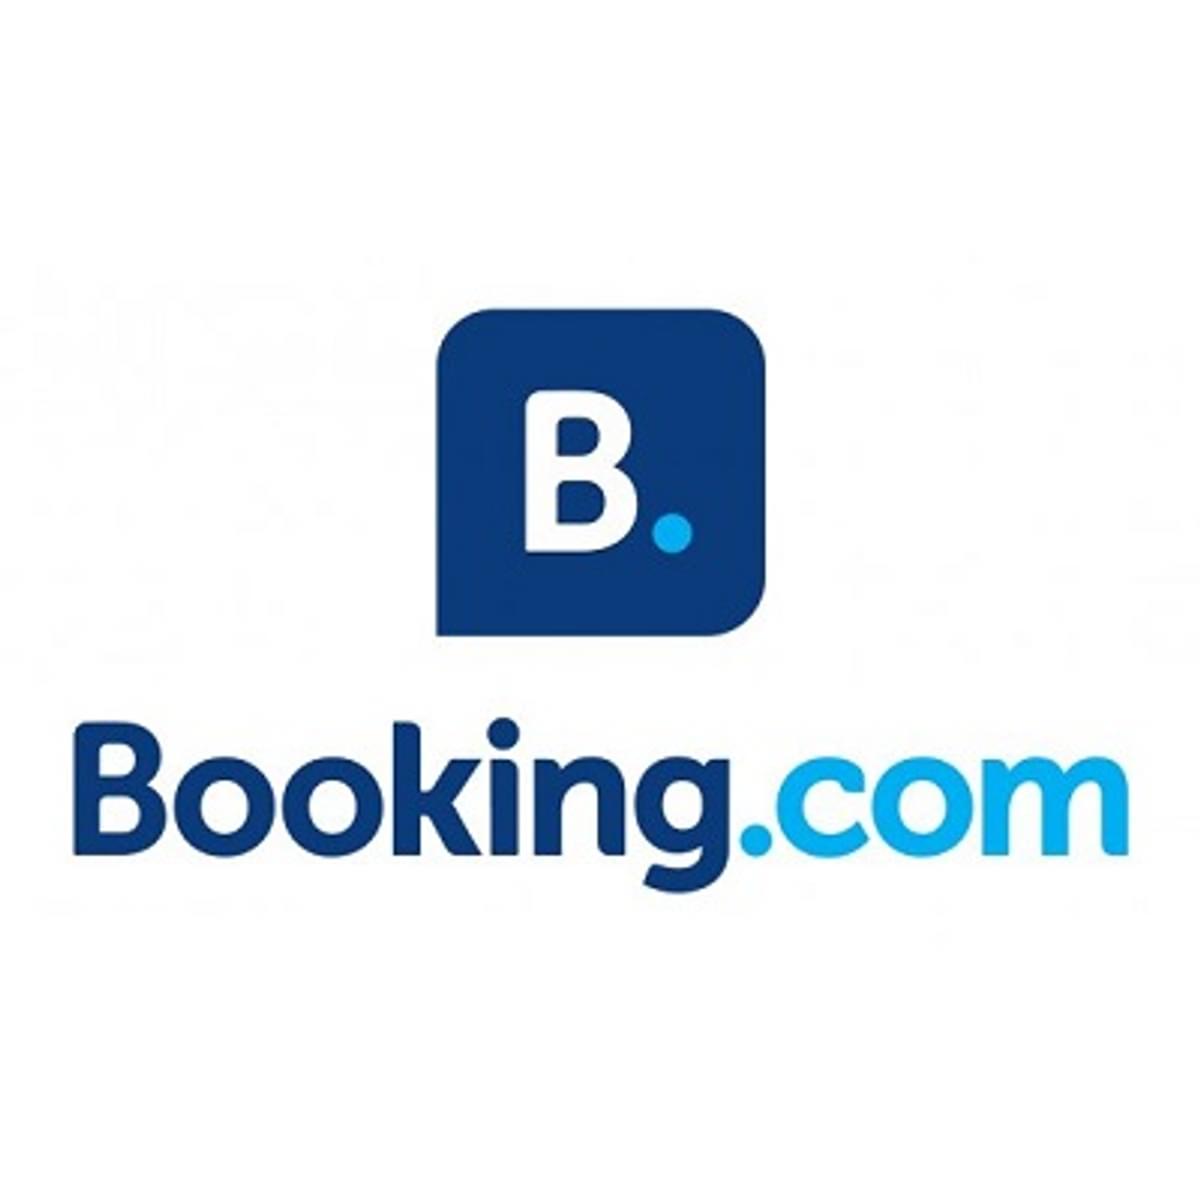 Booking.com vraagt staatssteun in Nederland image